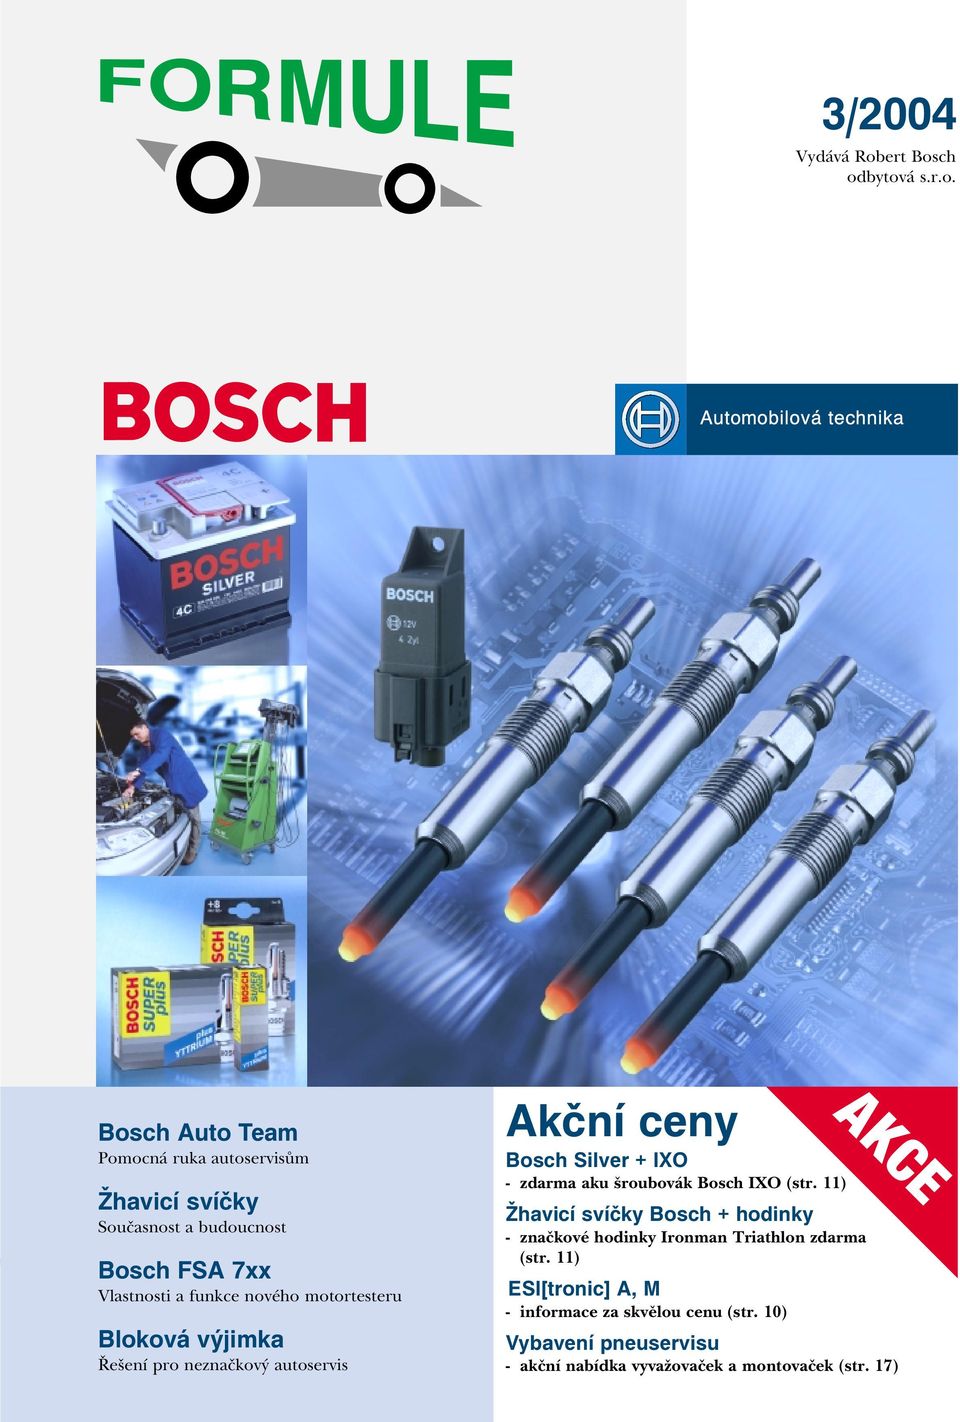 ch odbytová s.r.o. Bosch Auto Team Pomocná ruka autoservisům Žhavicí svíčky Současnost a budoucnost Bosch FSA 7xx Vlastnosti a